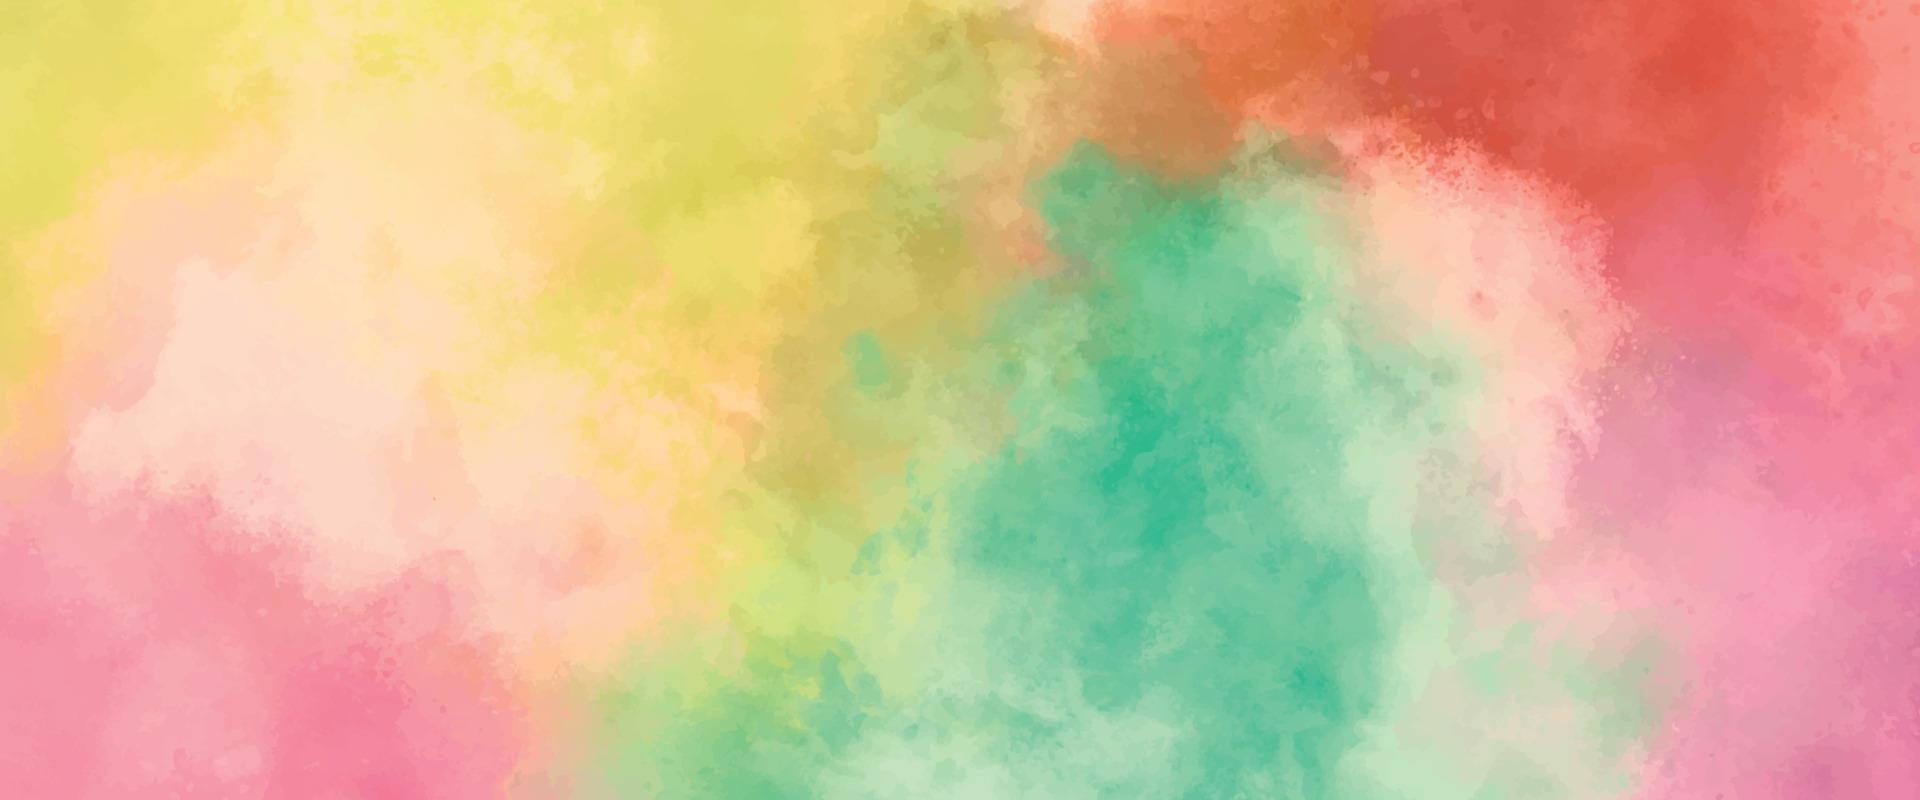 aquarelle colorée abstraite pour le fond. pastel coloré dessin texture grunge. taches d'aquarelle arc-en-ciel. vecteur